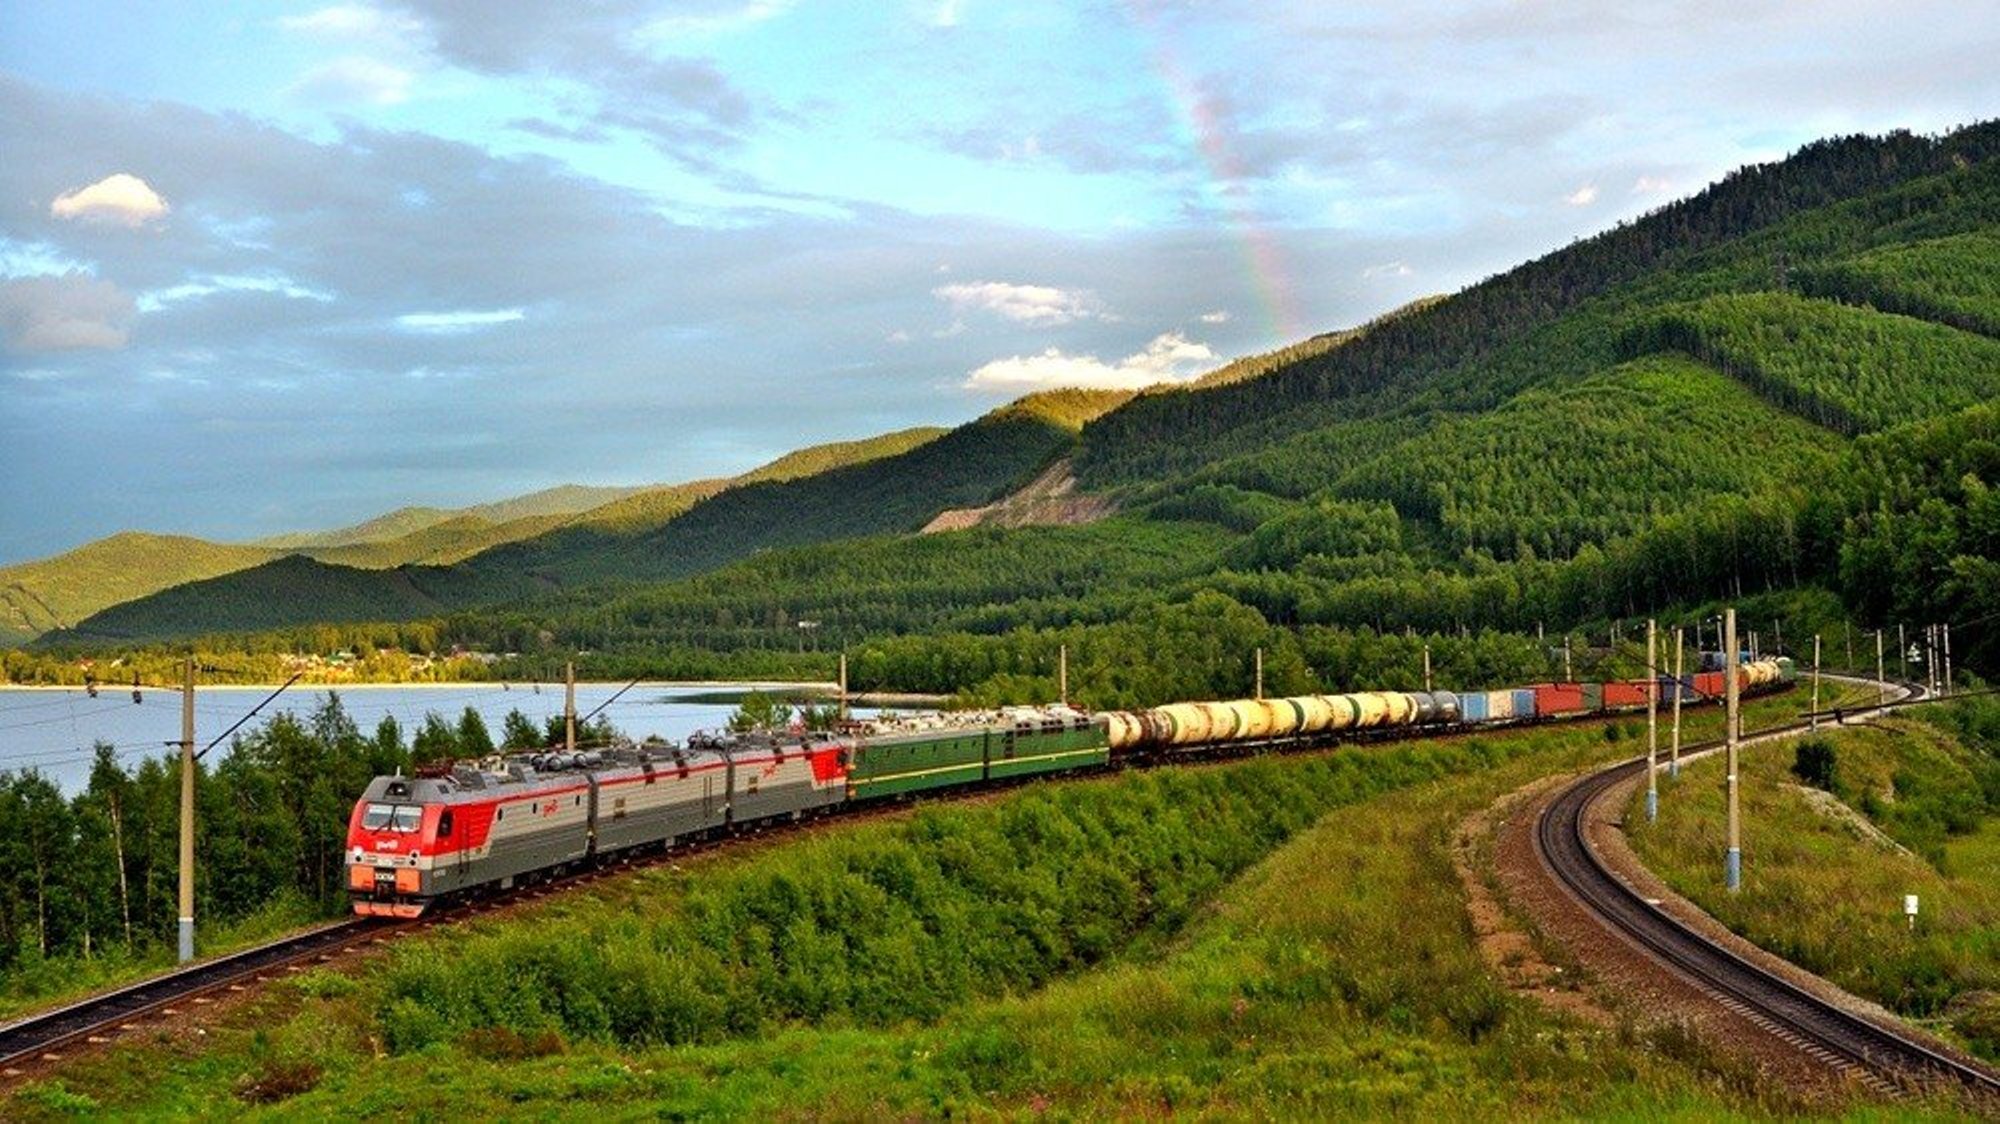 Транссибирская железная дорога россия